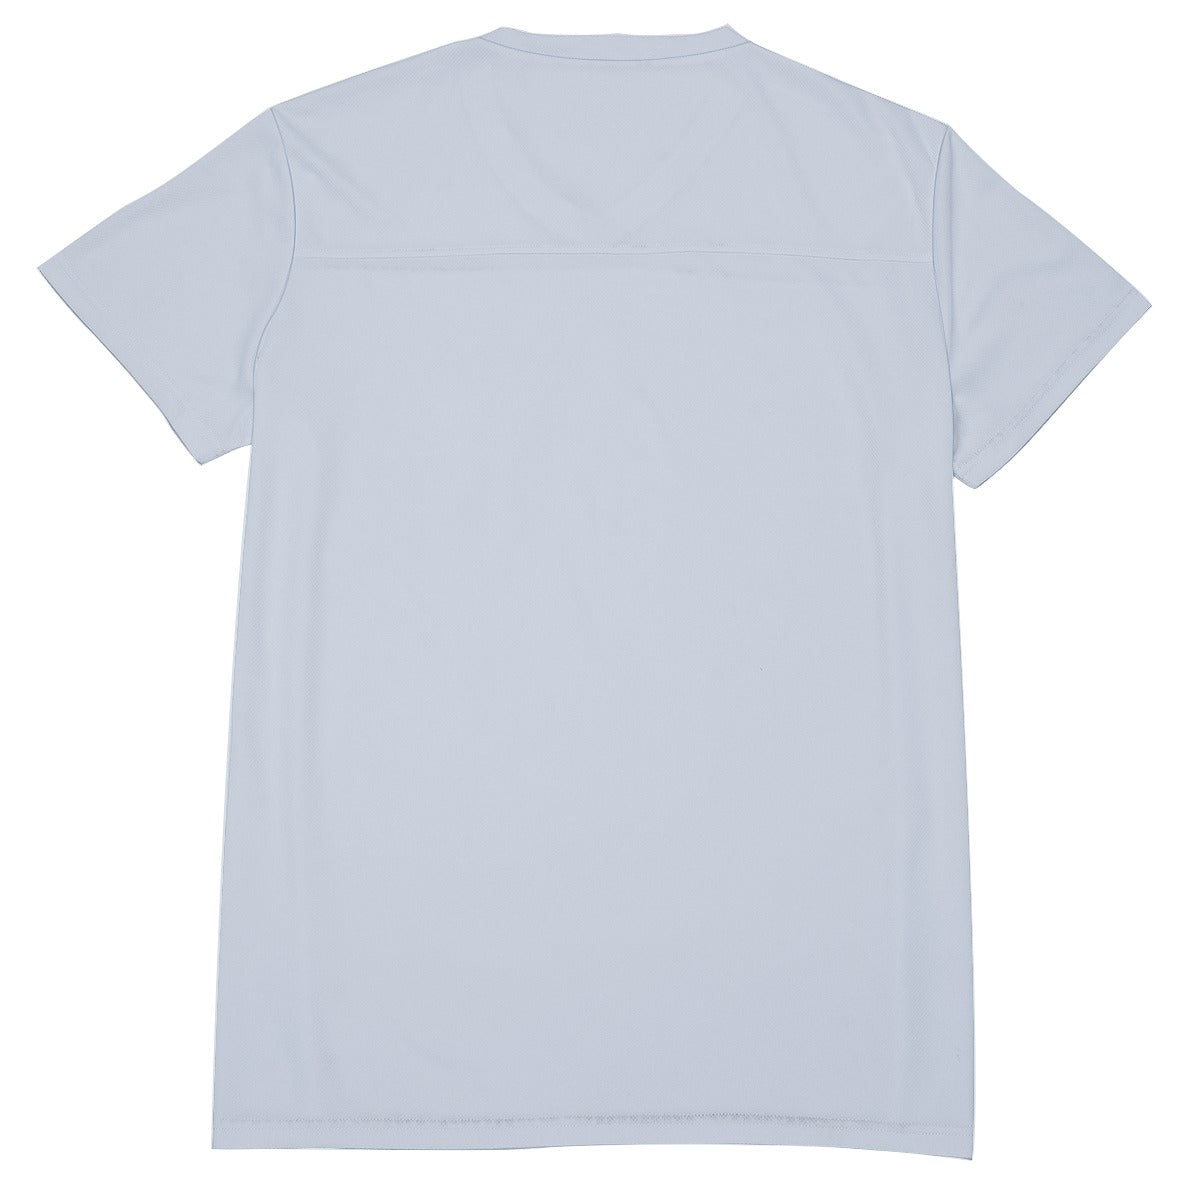 All-Over Print Men's V-neck Short Sleeve T-shirt